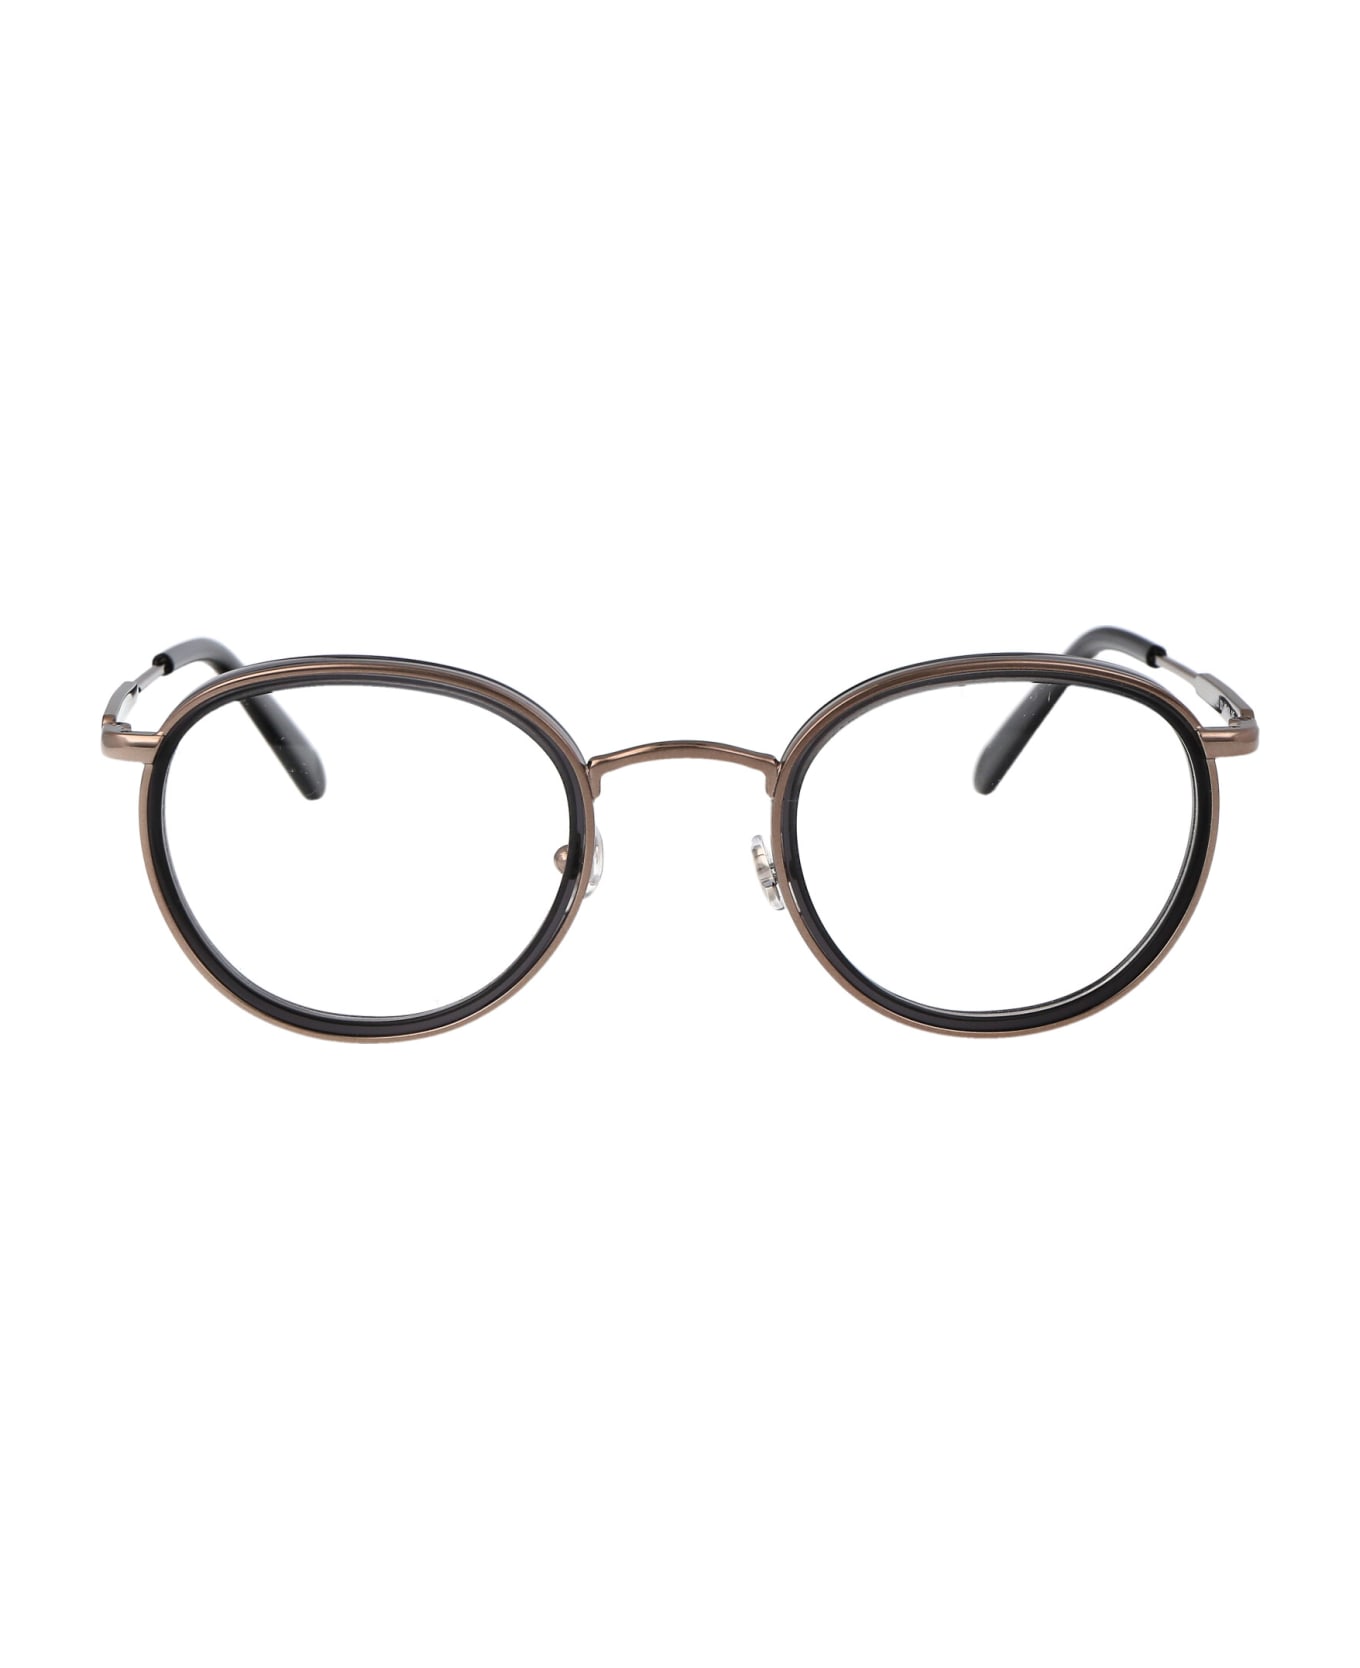 Moncler Eyewear Ml5153 Glasses - 001 Nero Lucido アイウェア